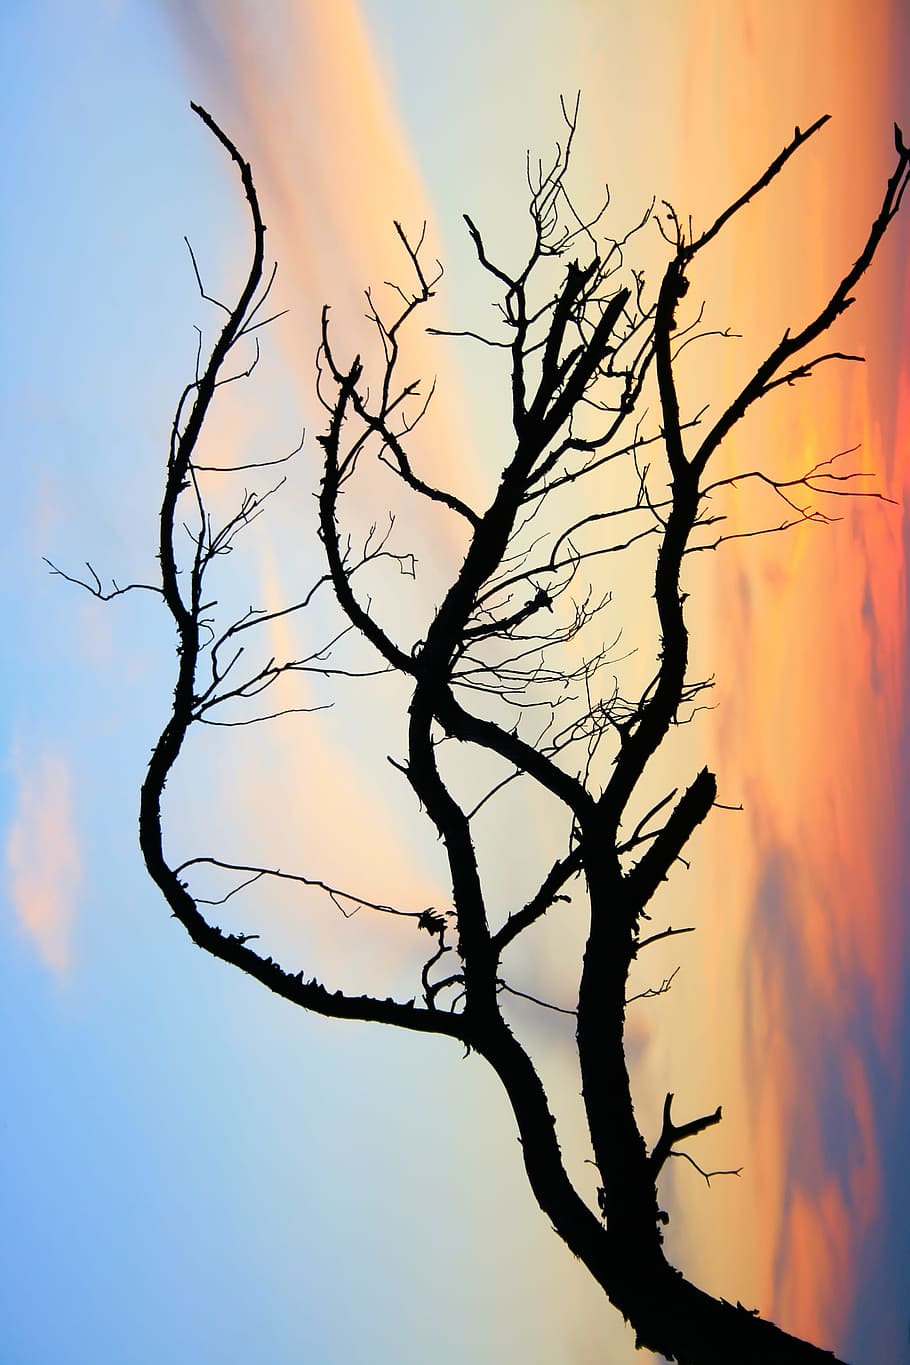 rama, desnudo, árbol, cielo, nubes, silueta, belleza en la naturaleza, puesta de sol, tranquilidad, árbol desnudo